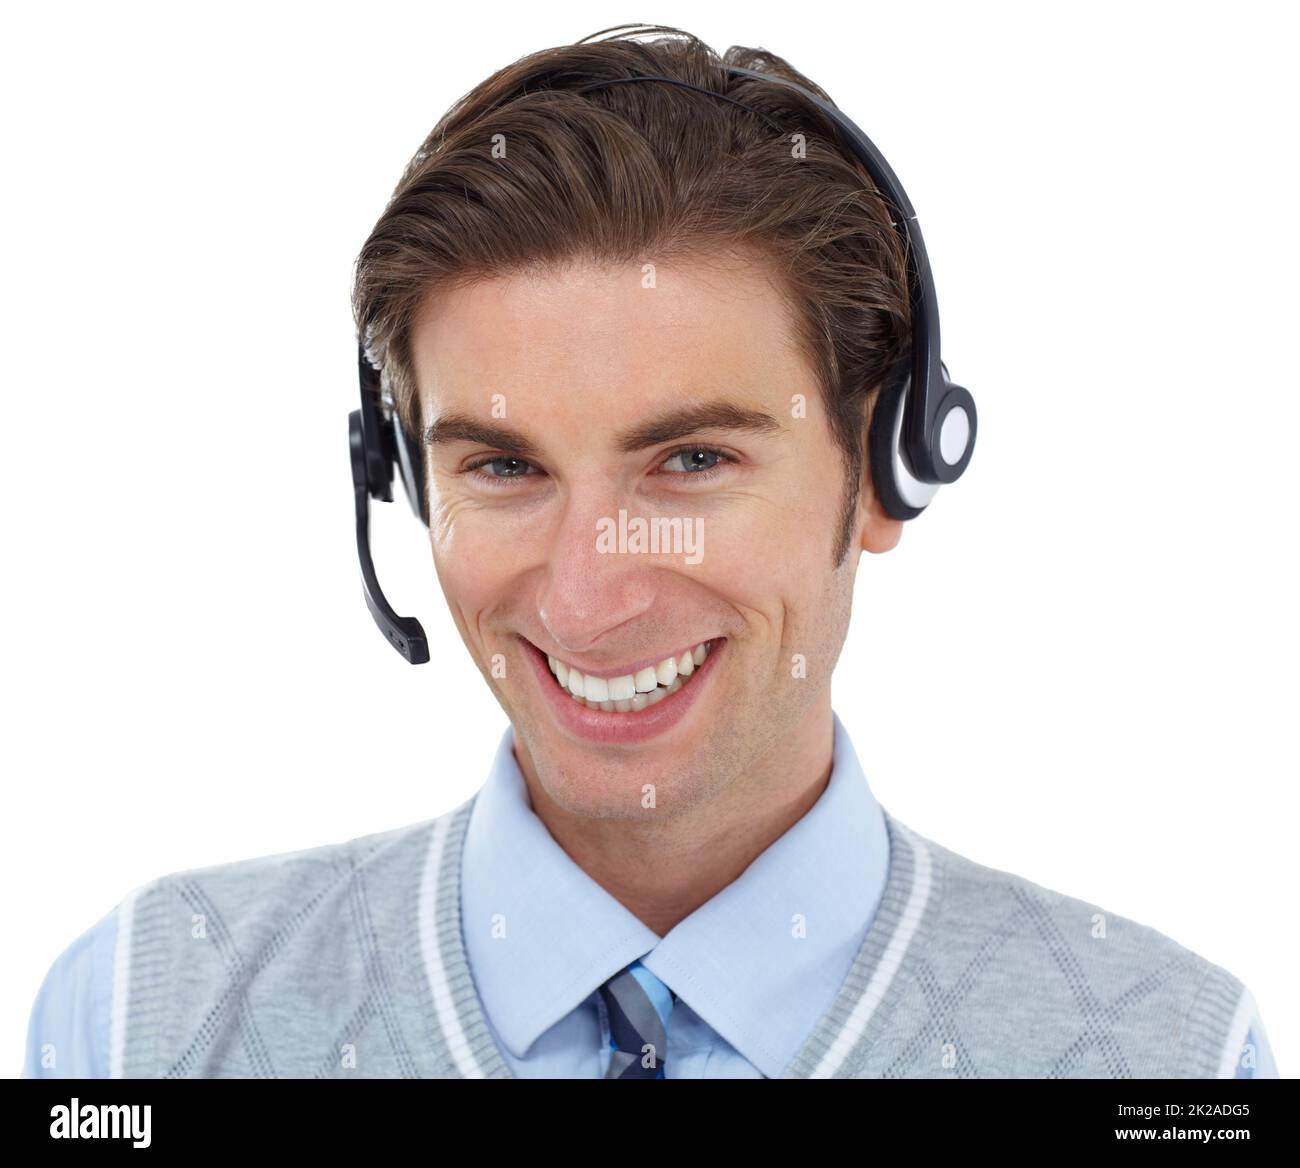 Hier, um zu helfen. Ein junger Callcenter-Agent lächelt einem an, während er auf Weiß isoliert ist. Stockfoto